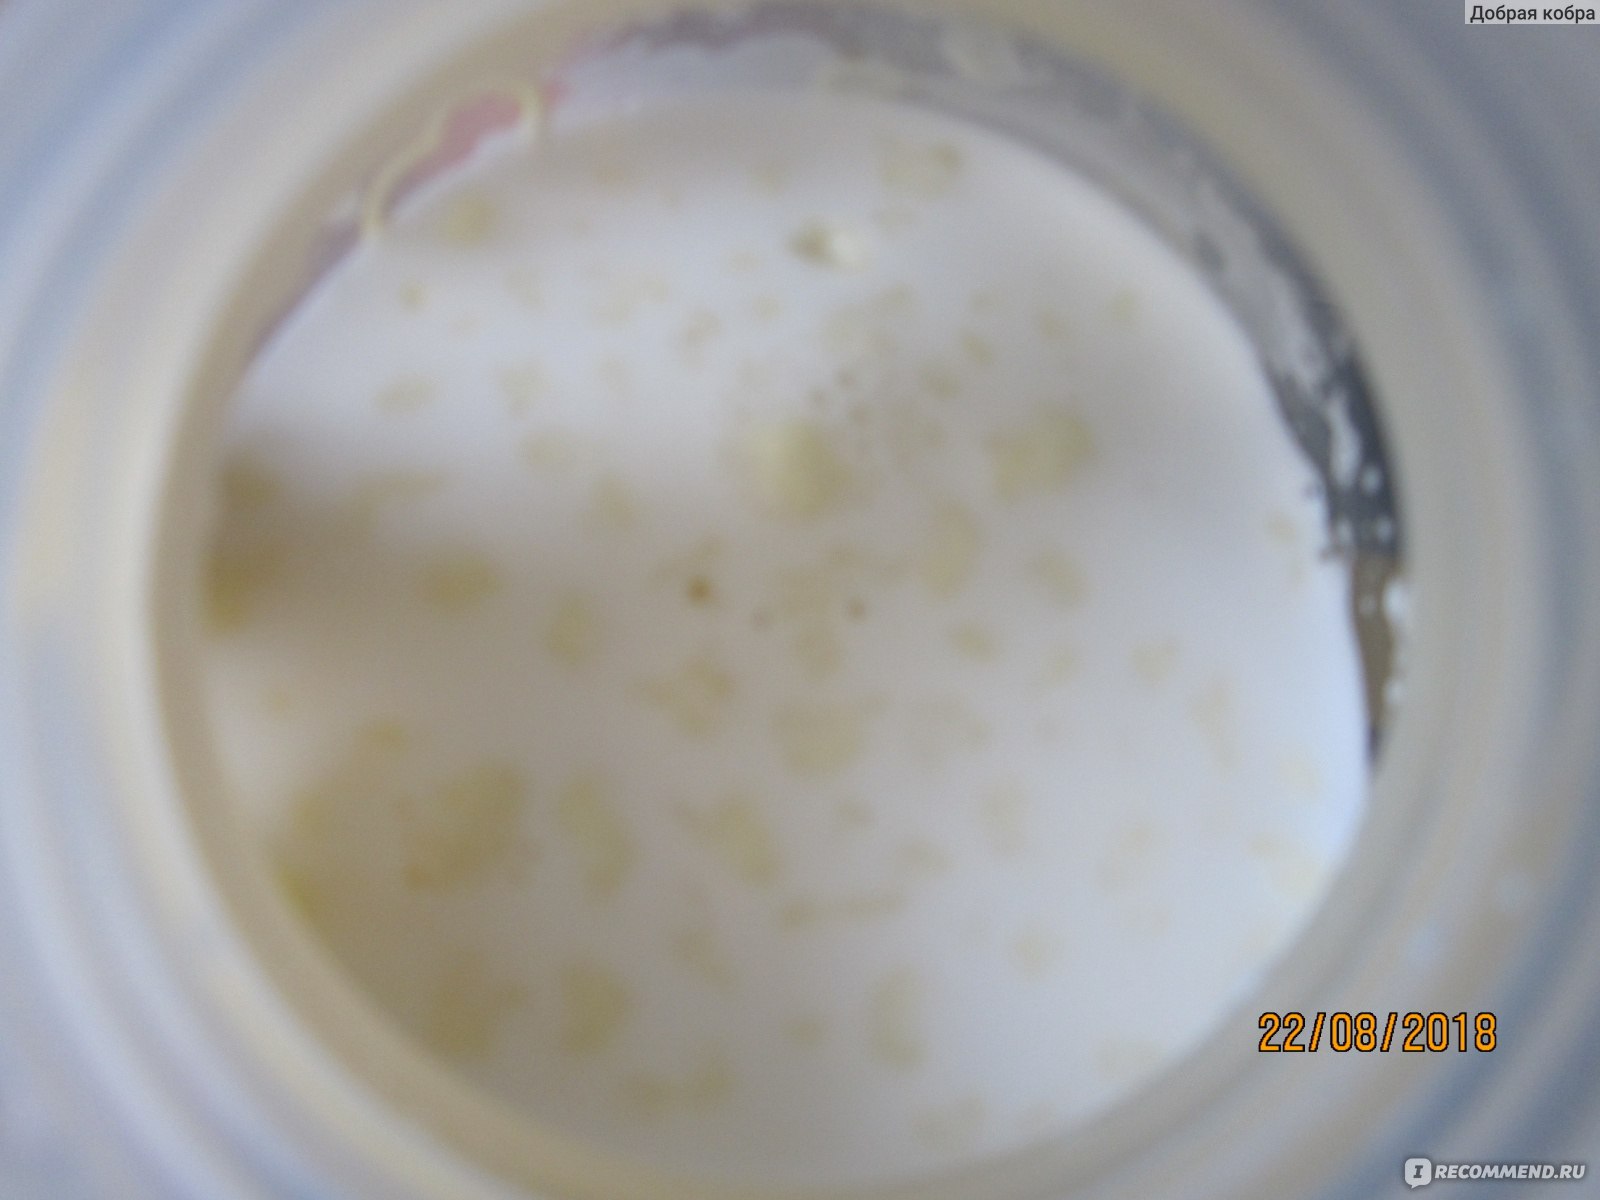 Белые комочки после молочной смеси